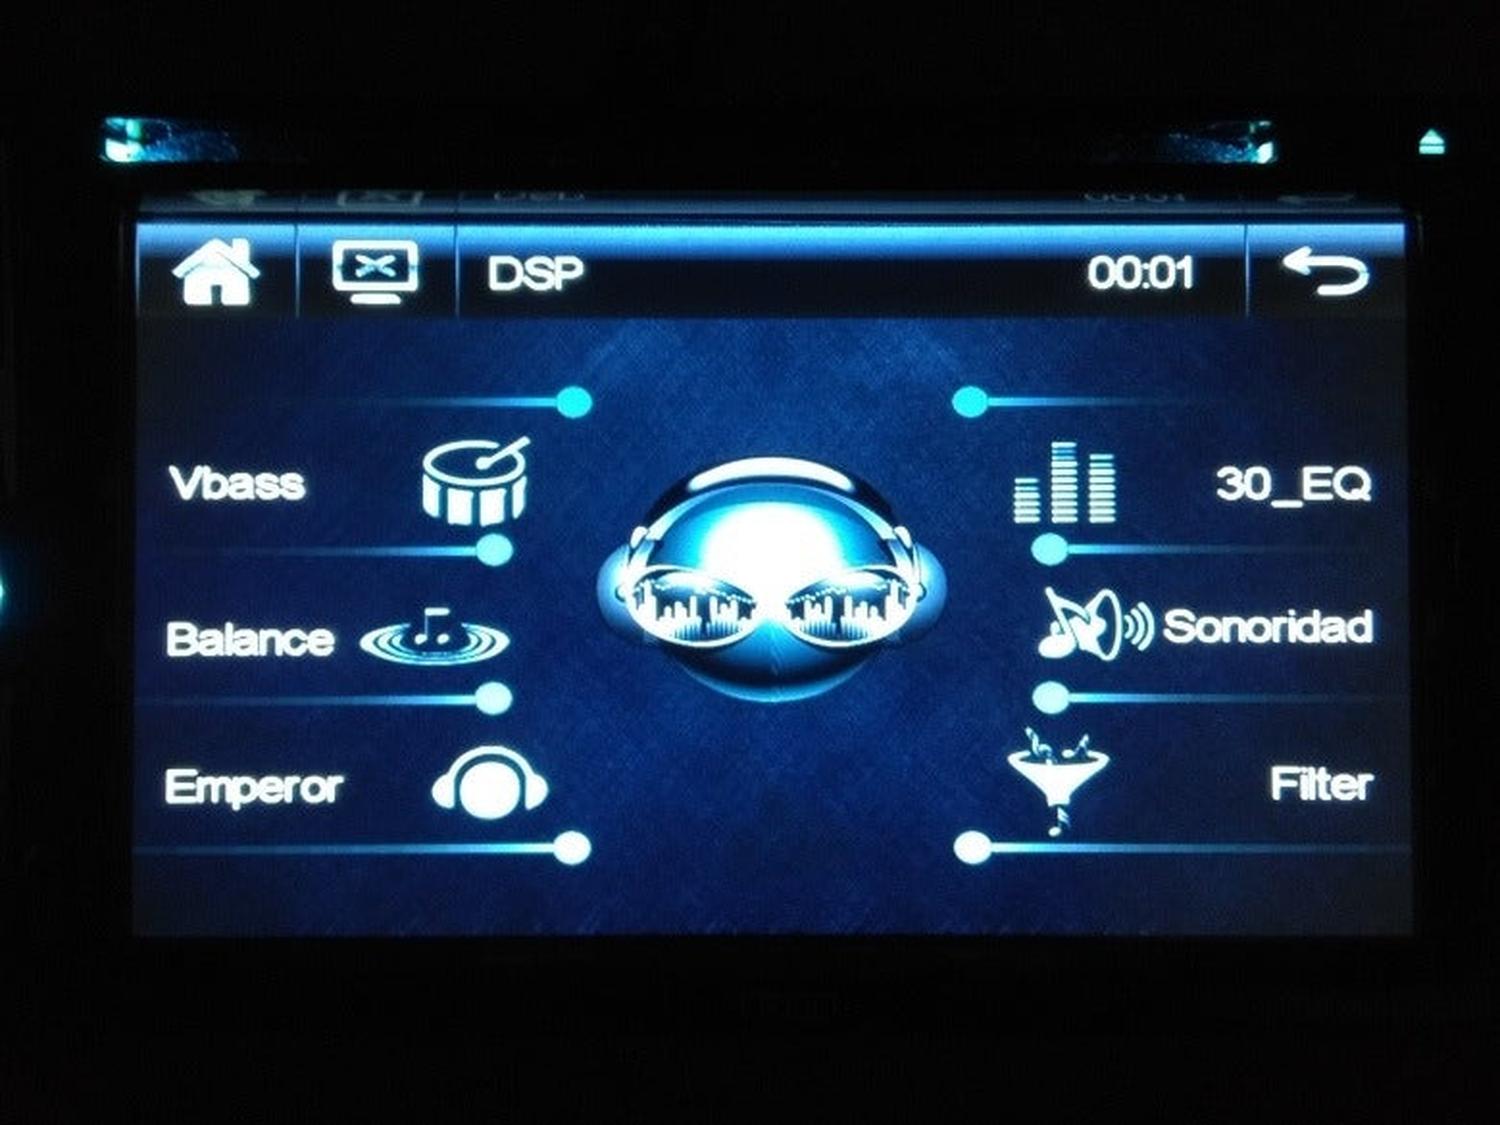 Autoestéreo 2 DIN Treo TREOMLDSP DVD 50 Watts Bluetooth Mirror Link & DSP - Audioshop México lo mejor en Car Audio en México -  Treo